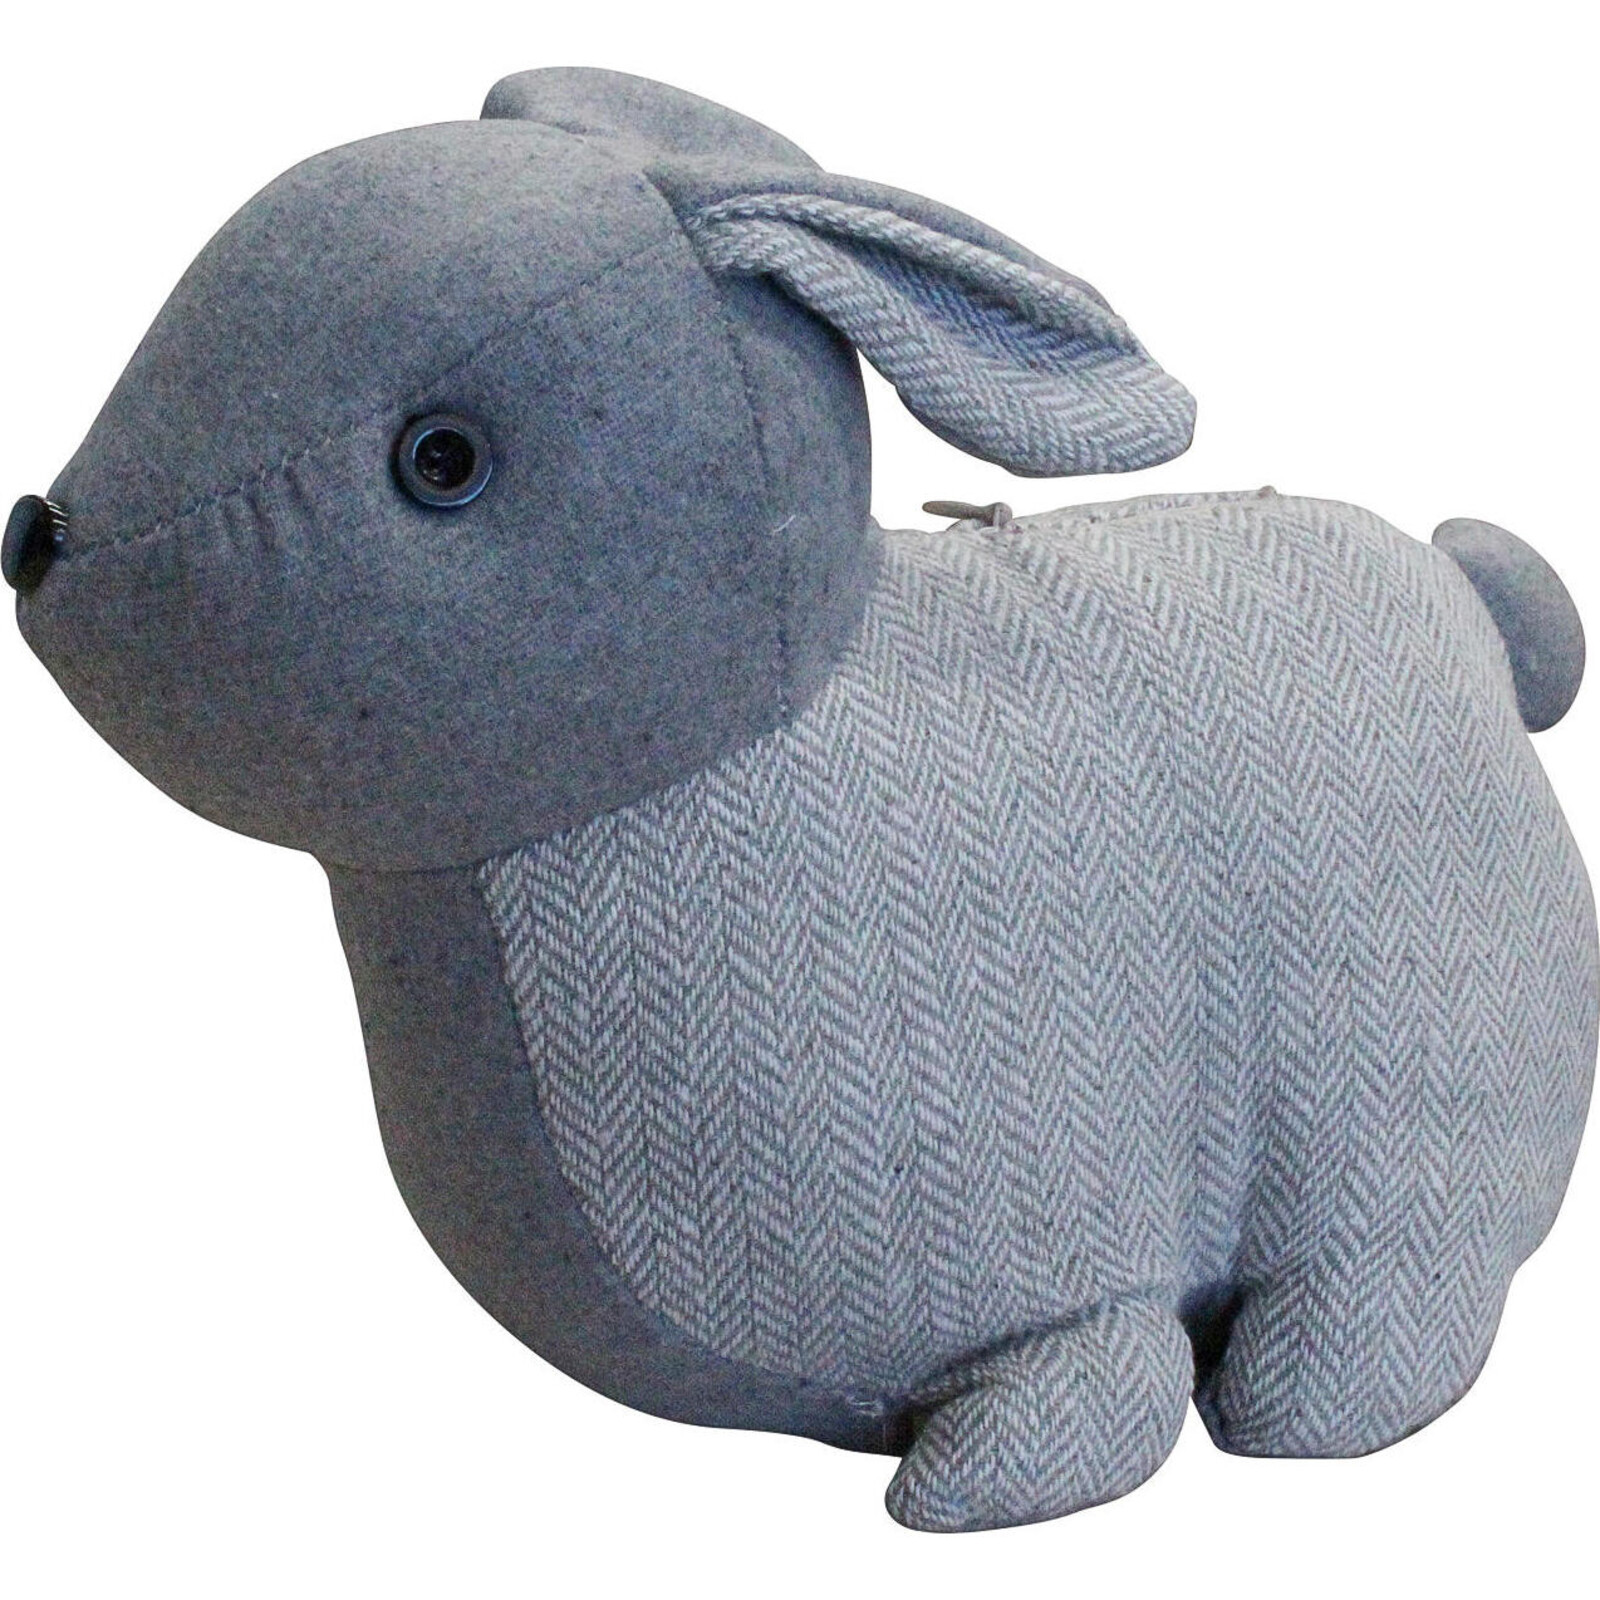 Doorstop Rollie Rabbit